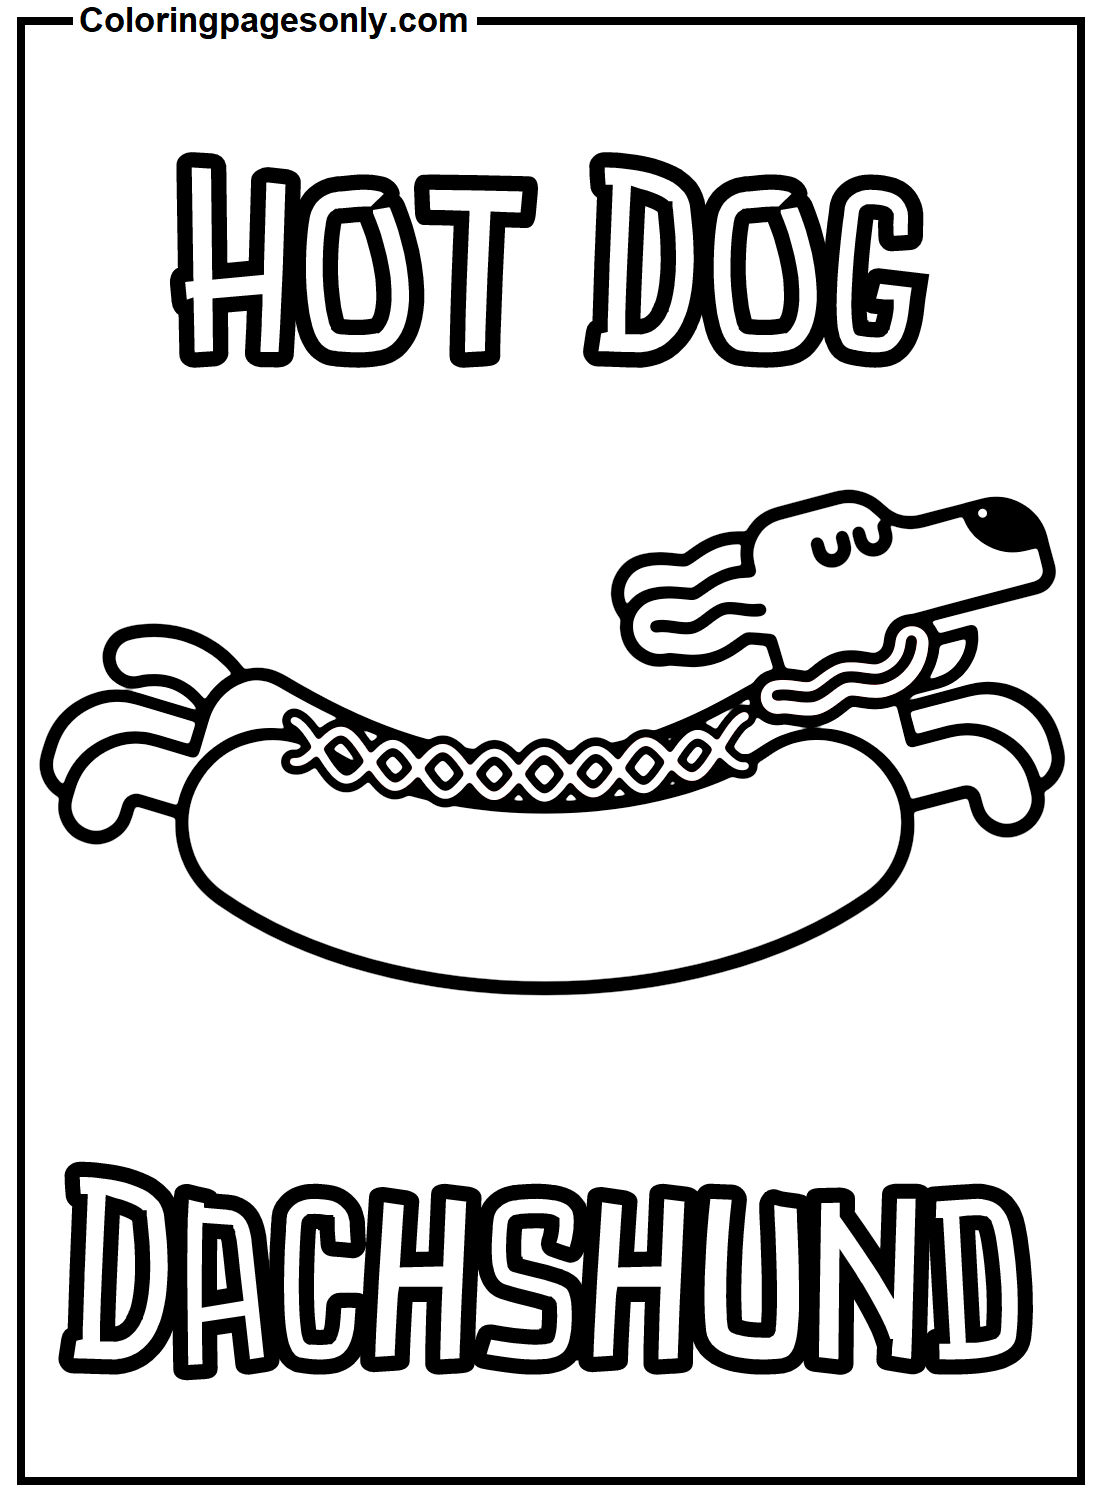 Dachshund de cachorro-quente from Cachorro-quente